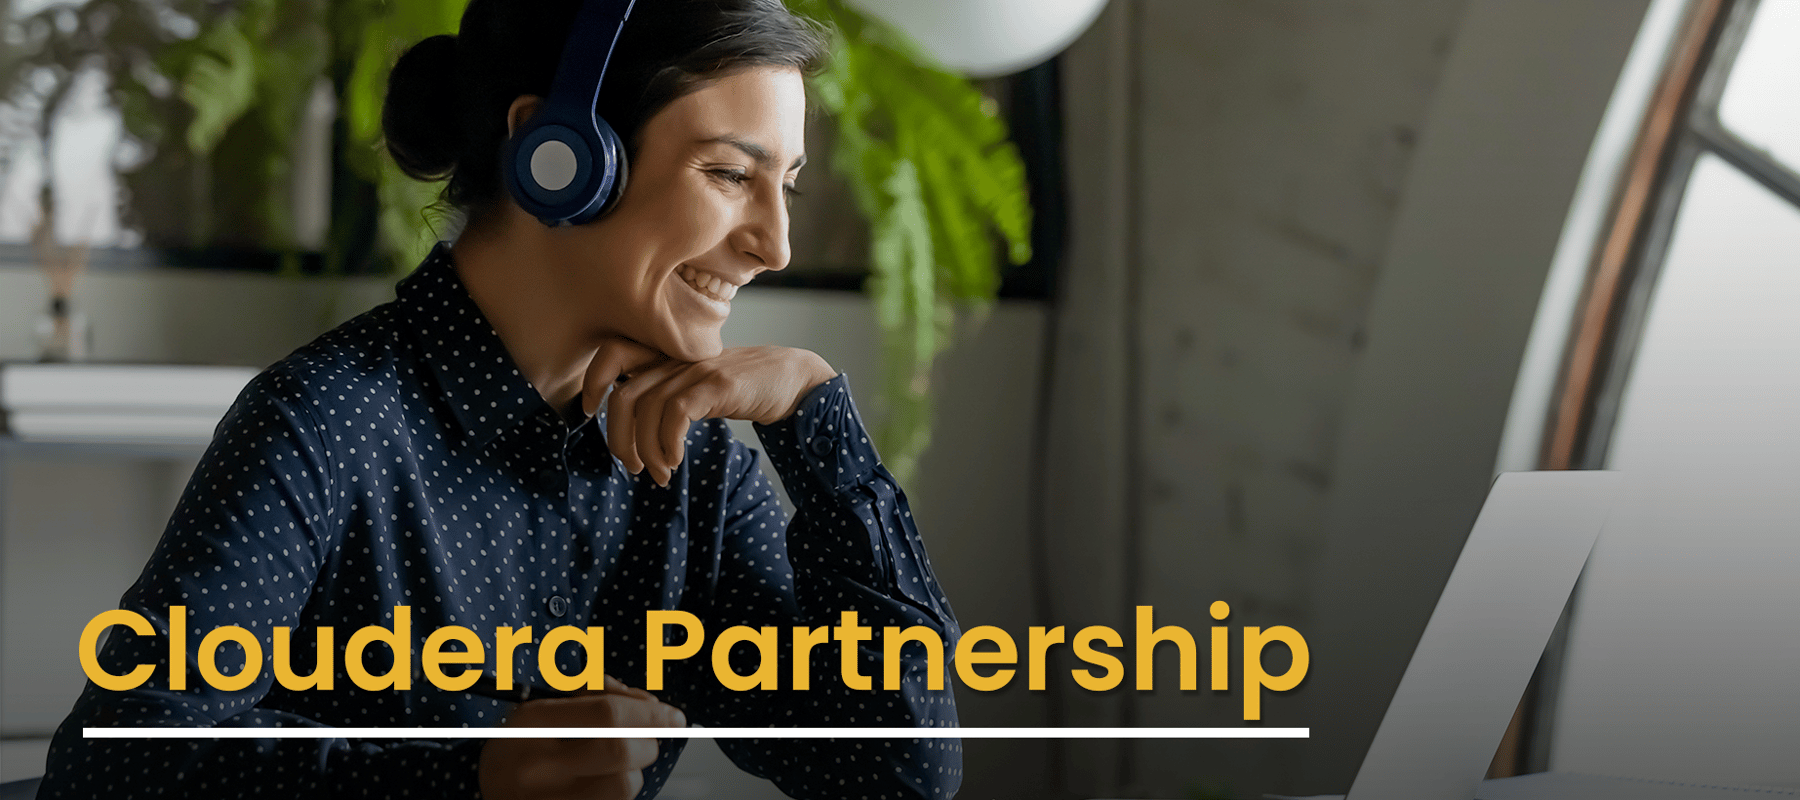 Cloudera Partnership